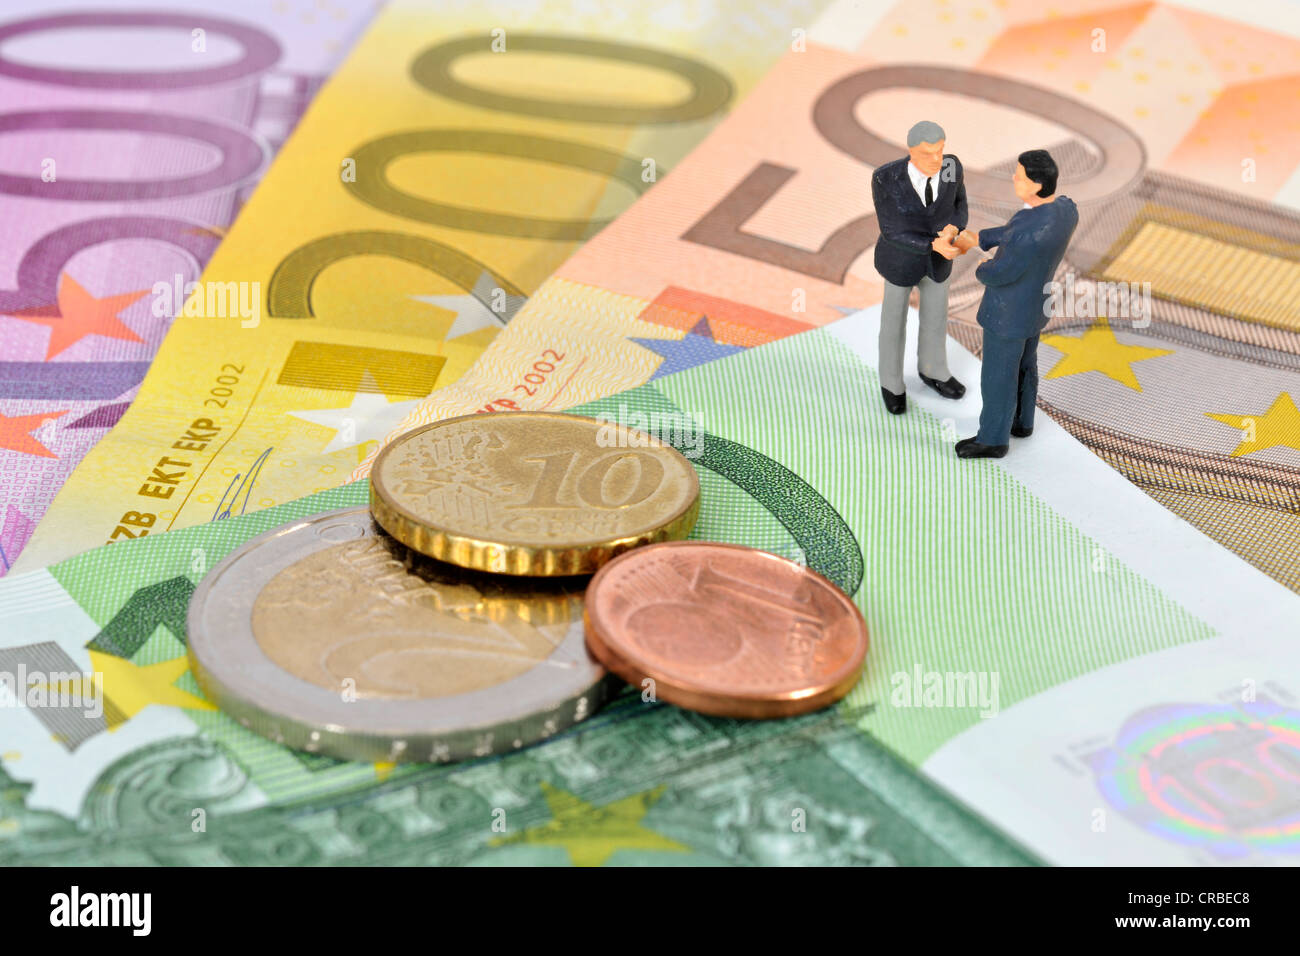 Miniatur-Figuren von Managern Händeschütteln beim stehen auf Euro-Banknoten und Münzen, symbolisches Bild für Unternehmen Stockfoto